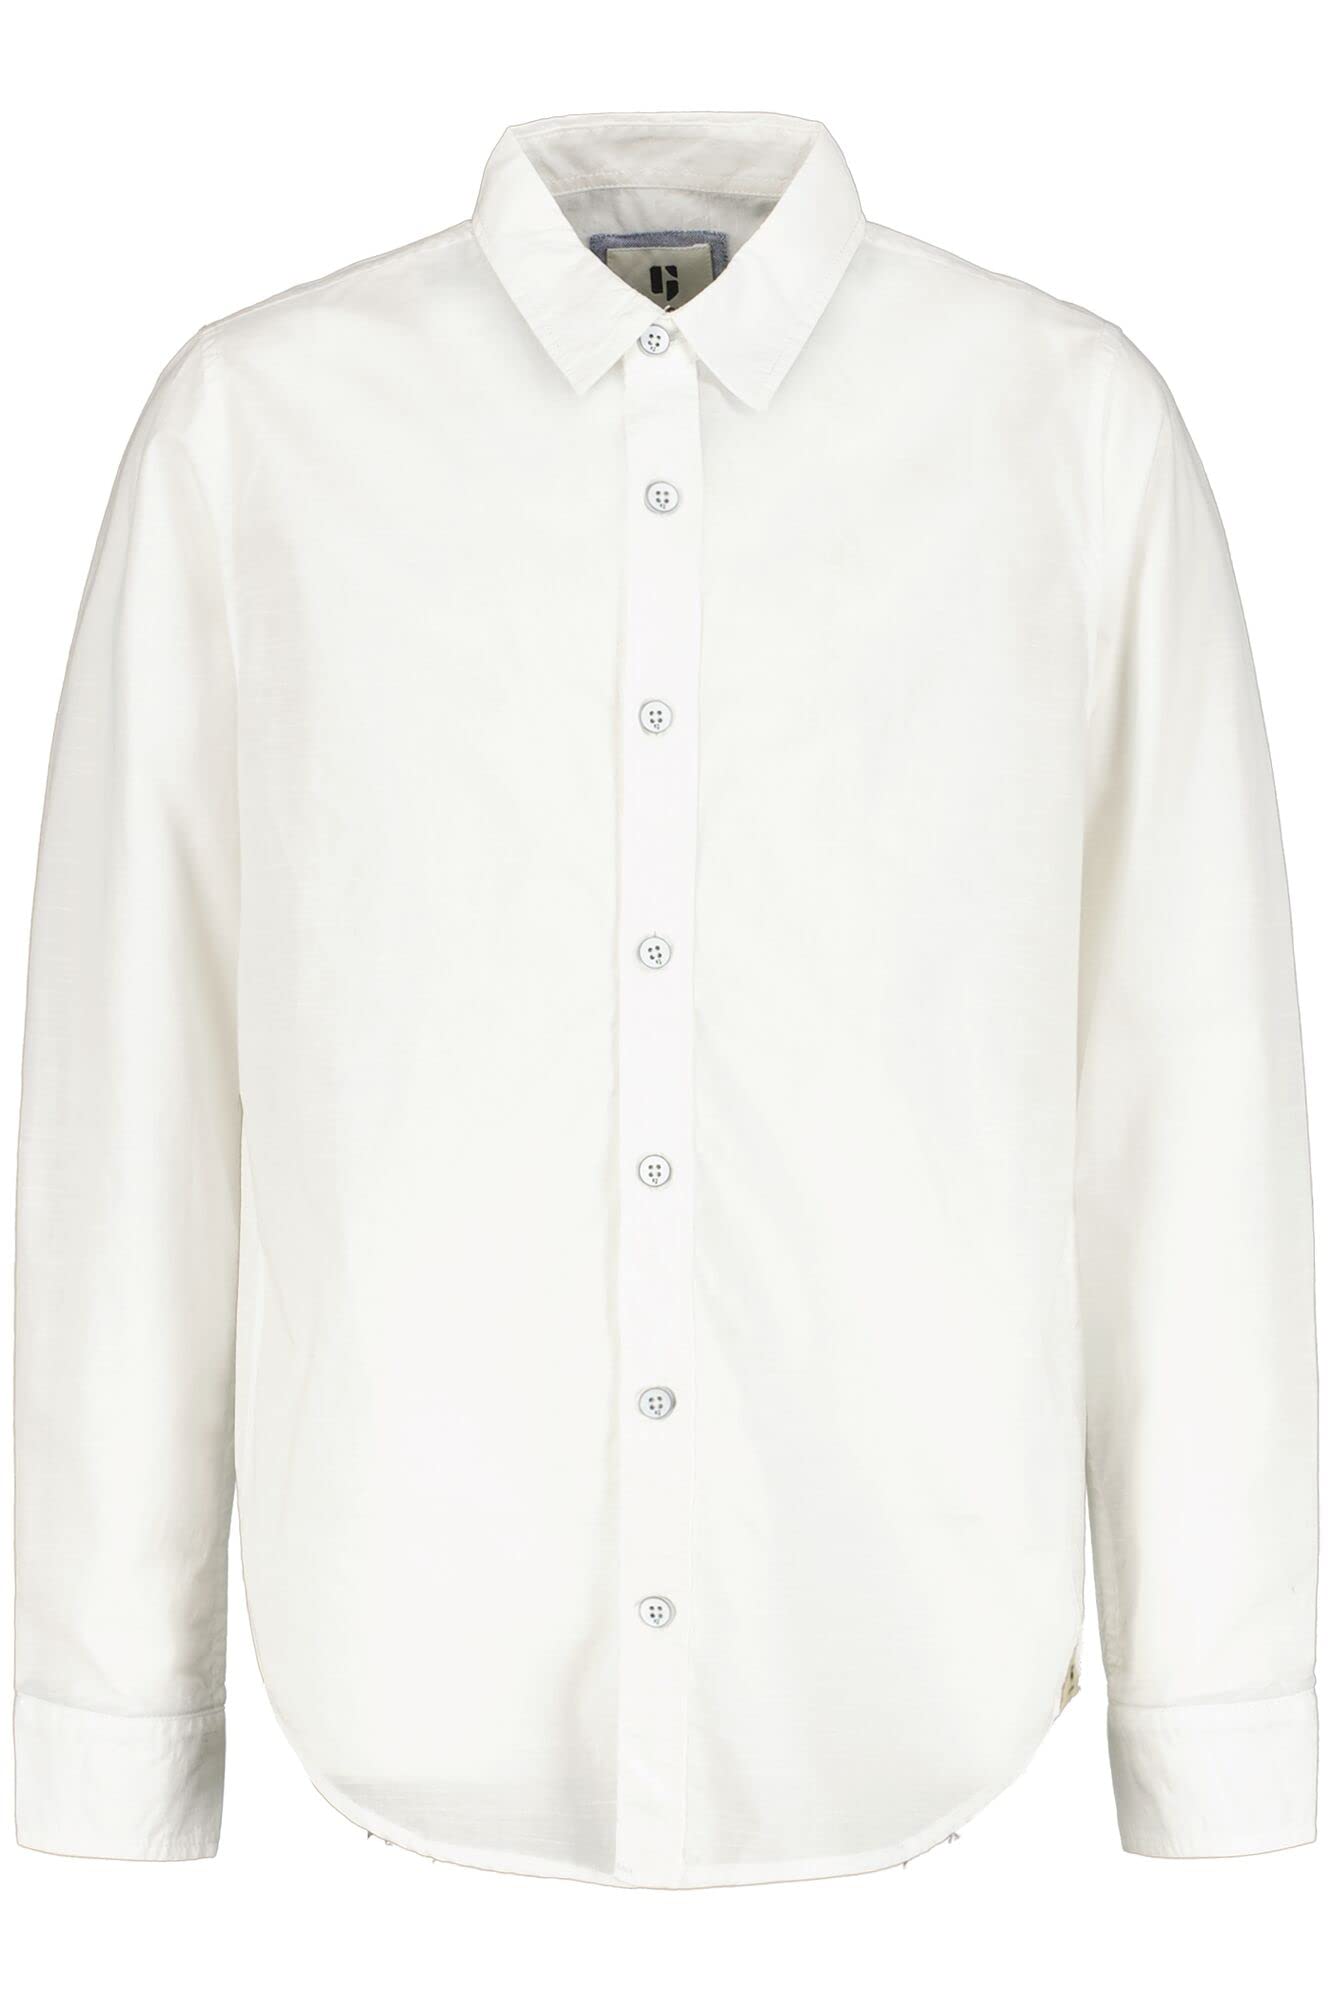 Garcia Kids Jungen Shirt Long Sleeve Hemd, Off White, 152/158